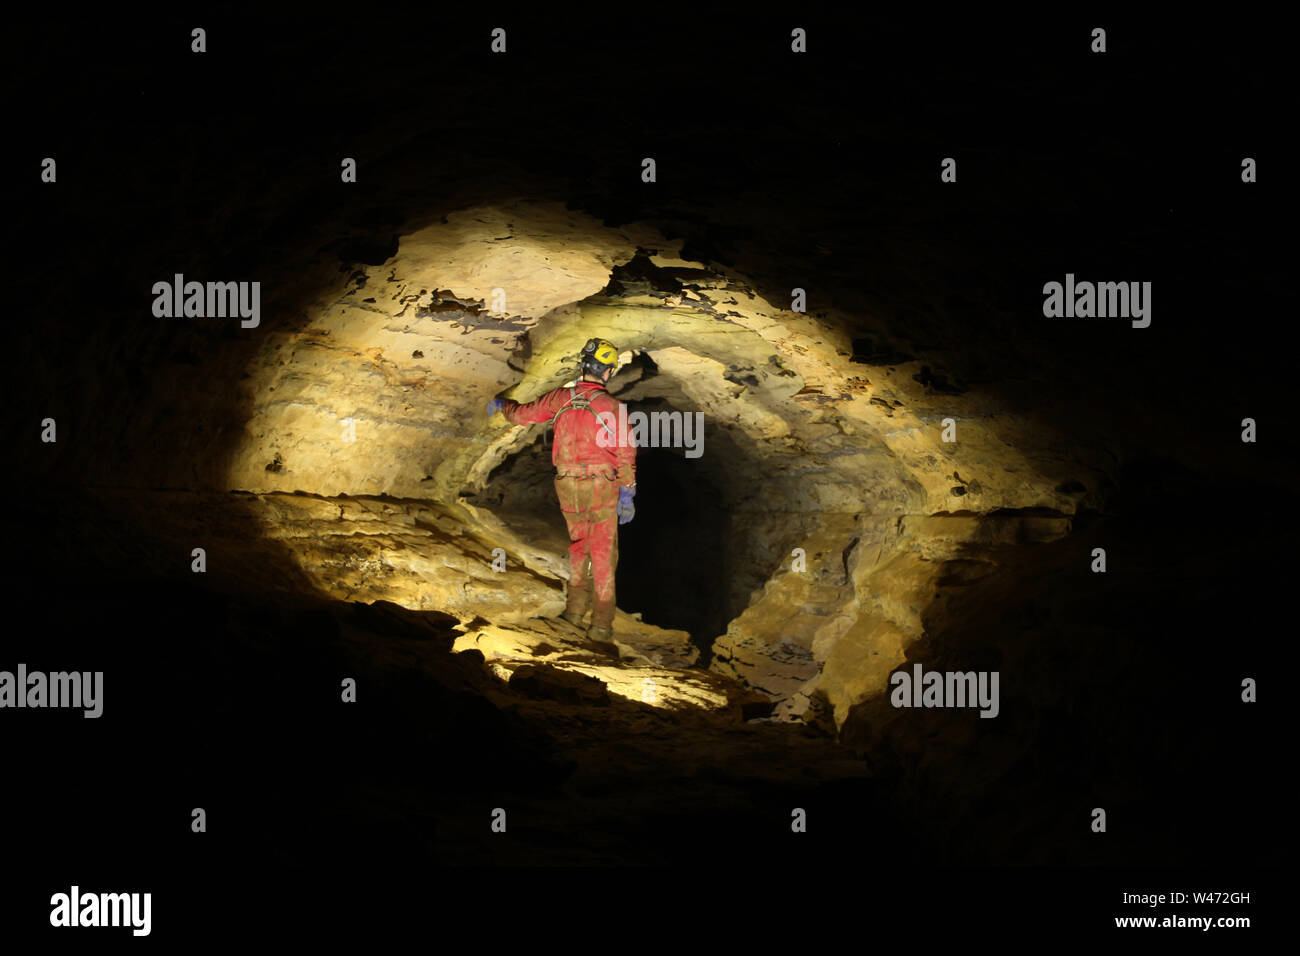 Caver exploring a cave Stock Photo